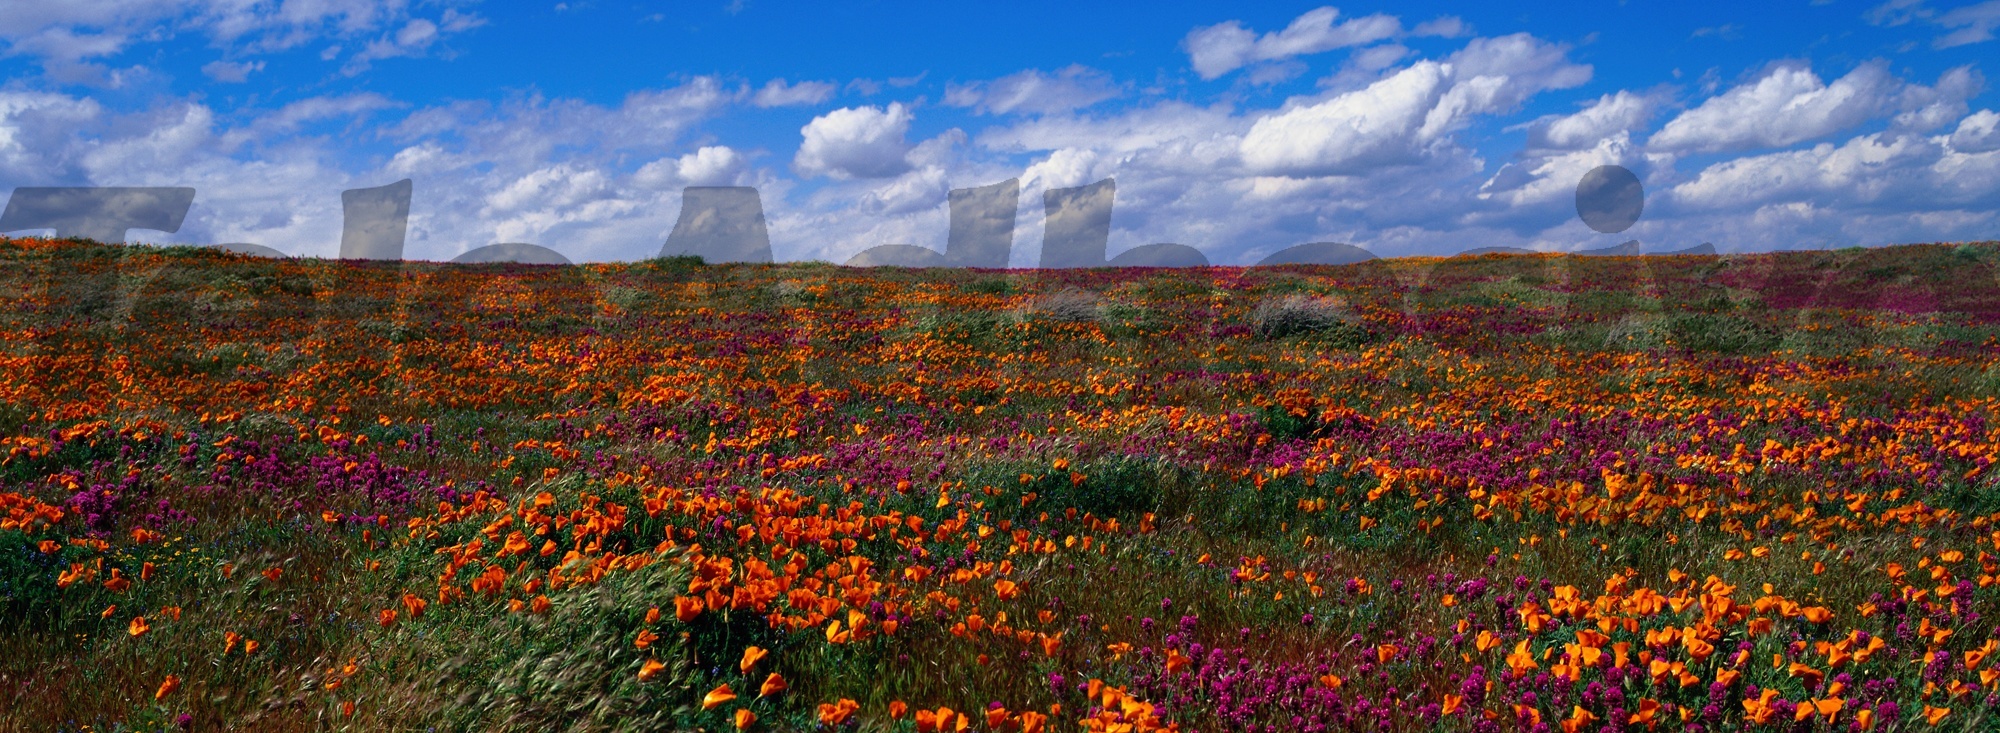 Fototapeten: Felder von Tulpen